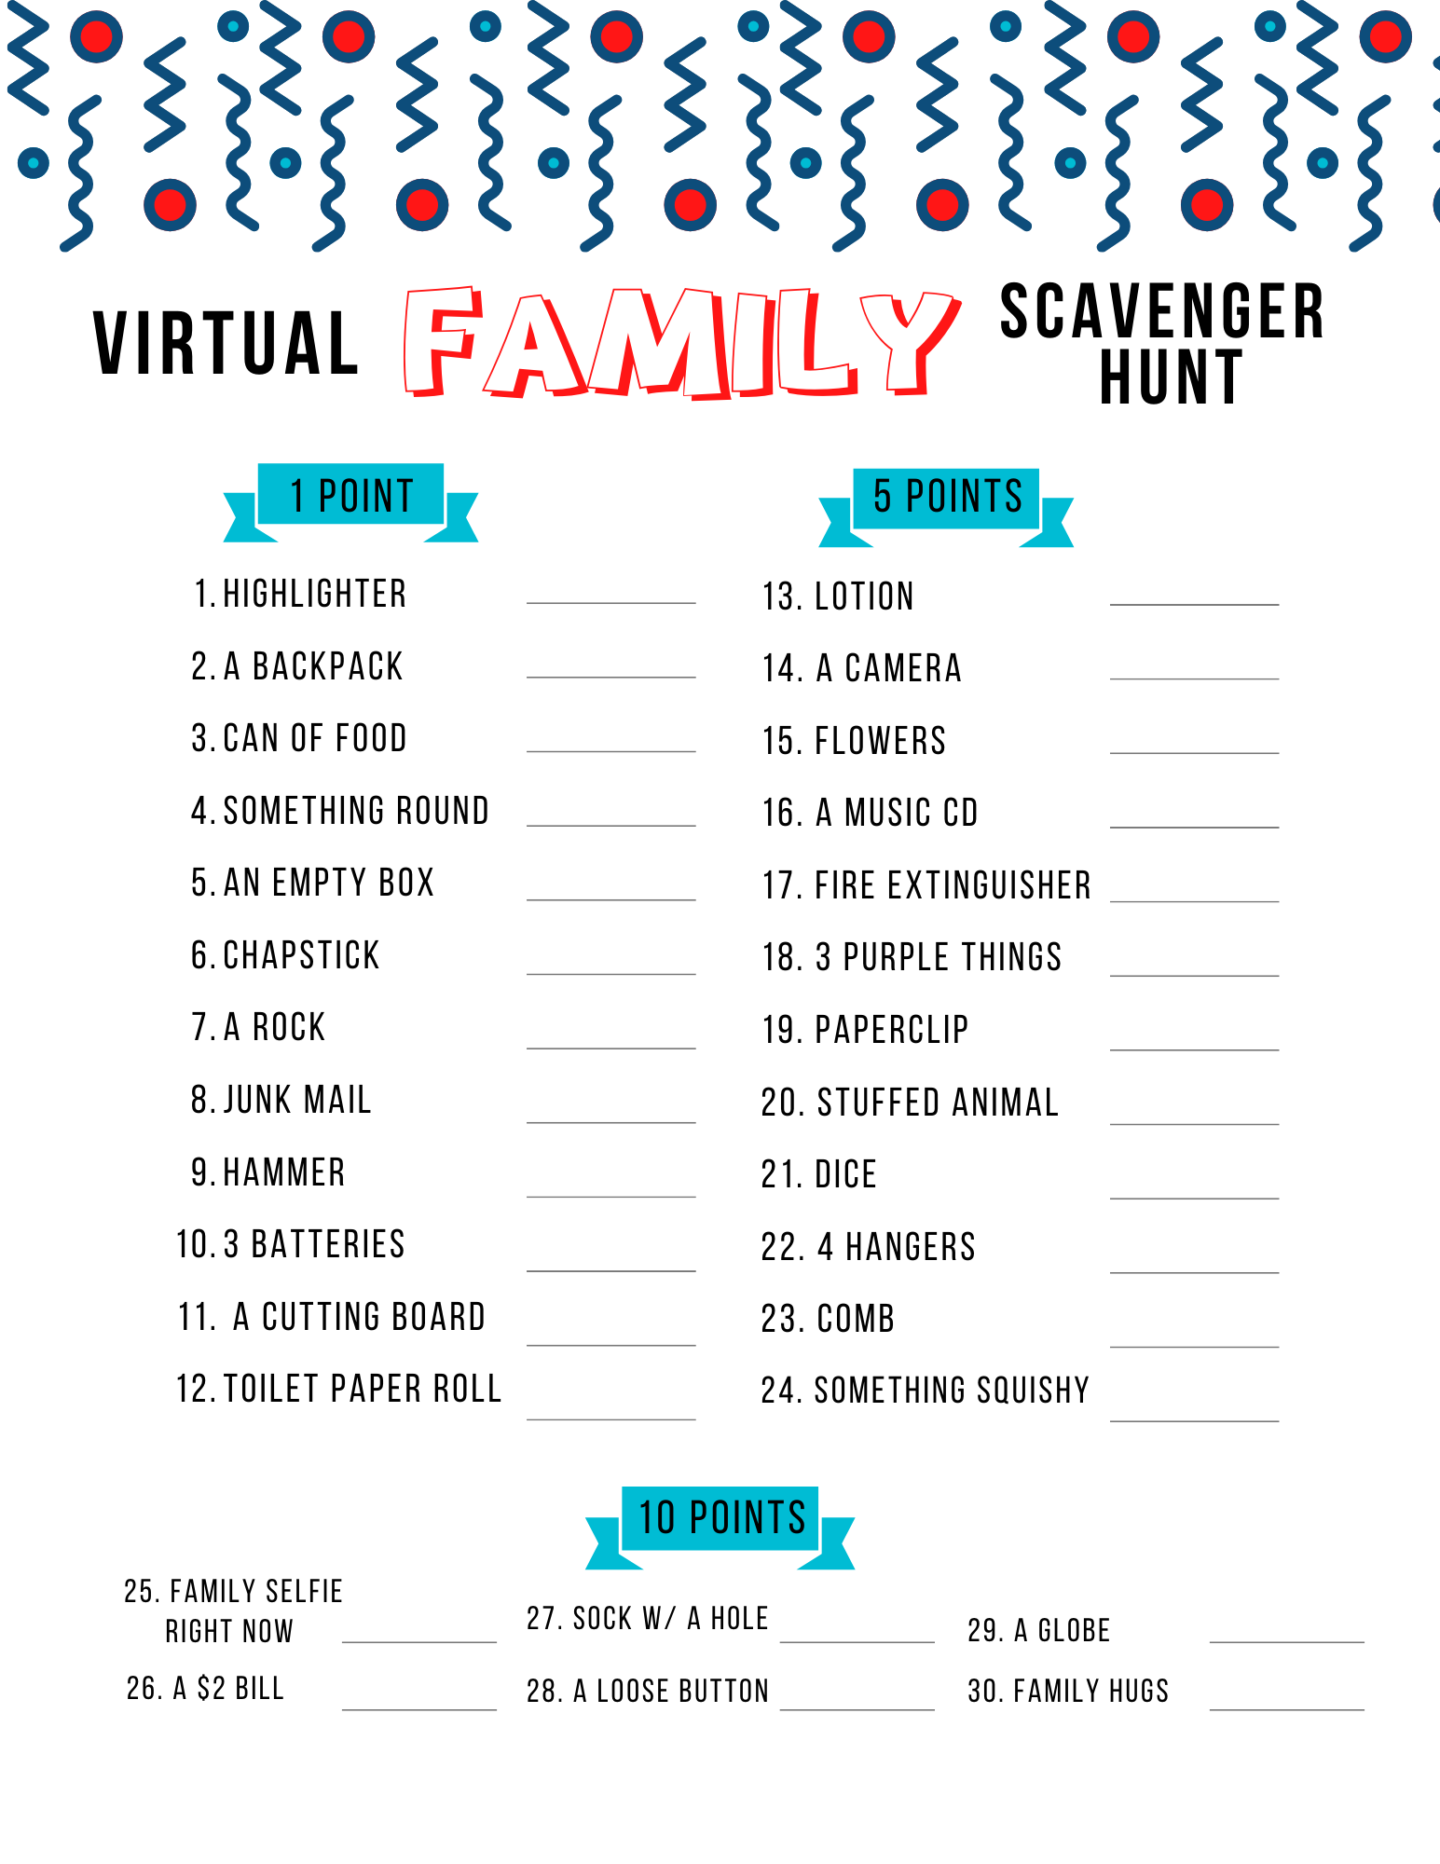 Virtual Family Scavenger Hunt